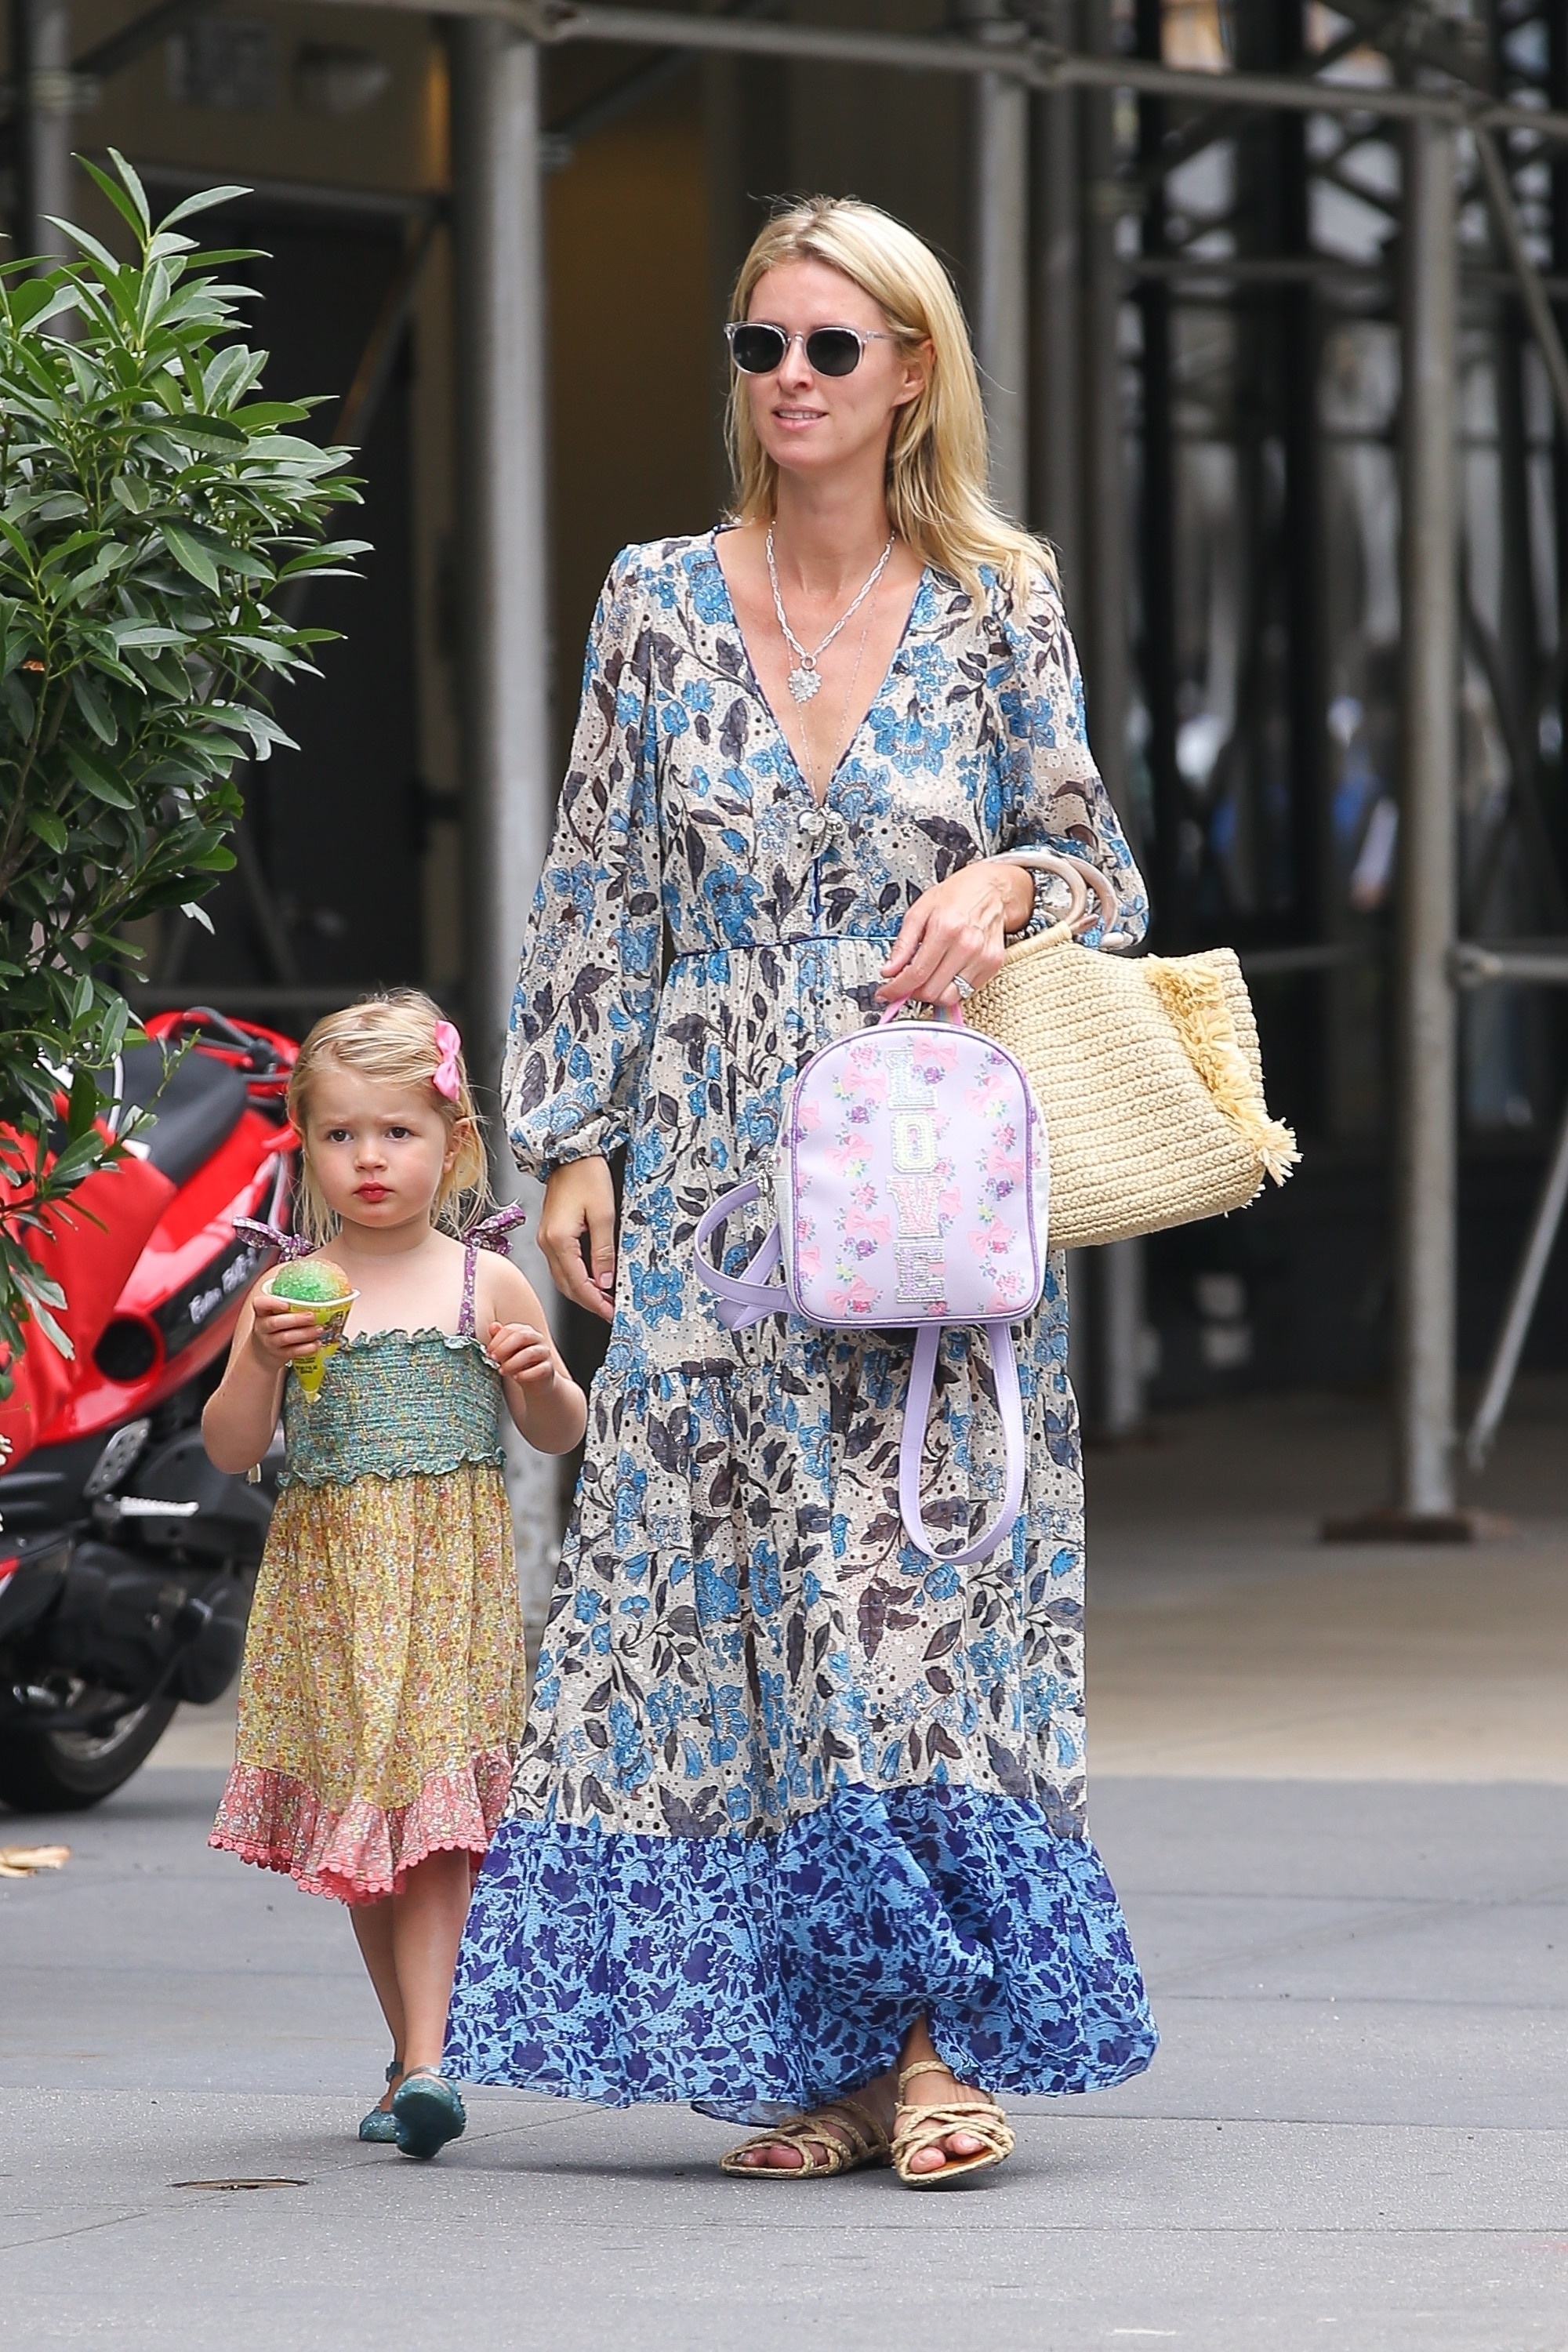 Nicky Hilton dio un paseo con su hija Lily-Grace Victoria por las calles de Nueva York. Para ello, lució un vestido largo estampado de flores, lentes de sol y una cartera que combinó con sus sandalias. Además, cargó la mochila de la pequeña